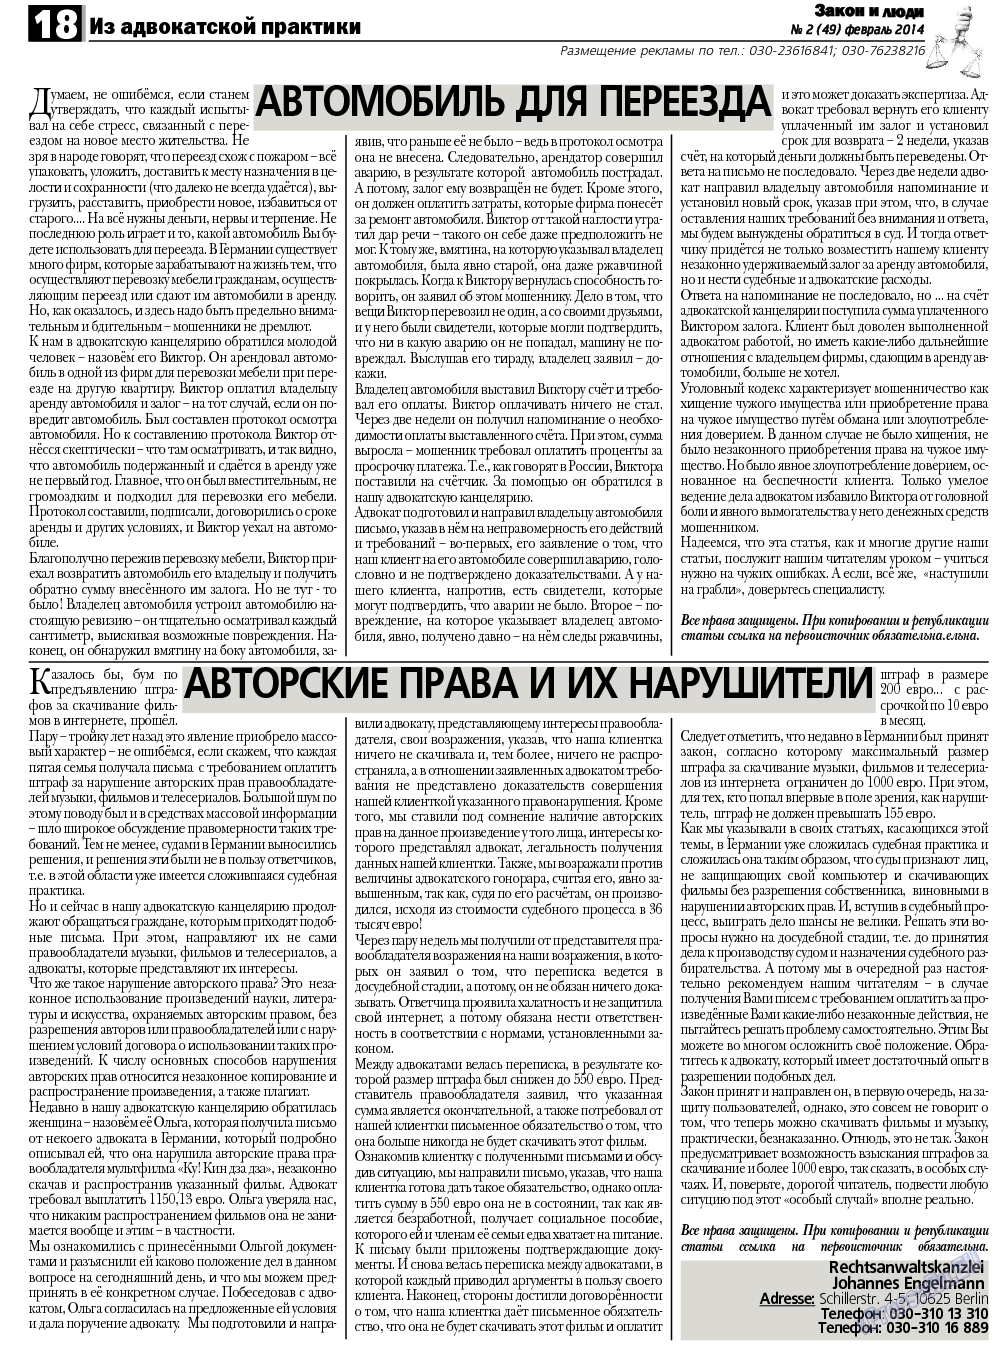 Закон и люди, газета. 2014 №2 стр.18